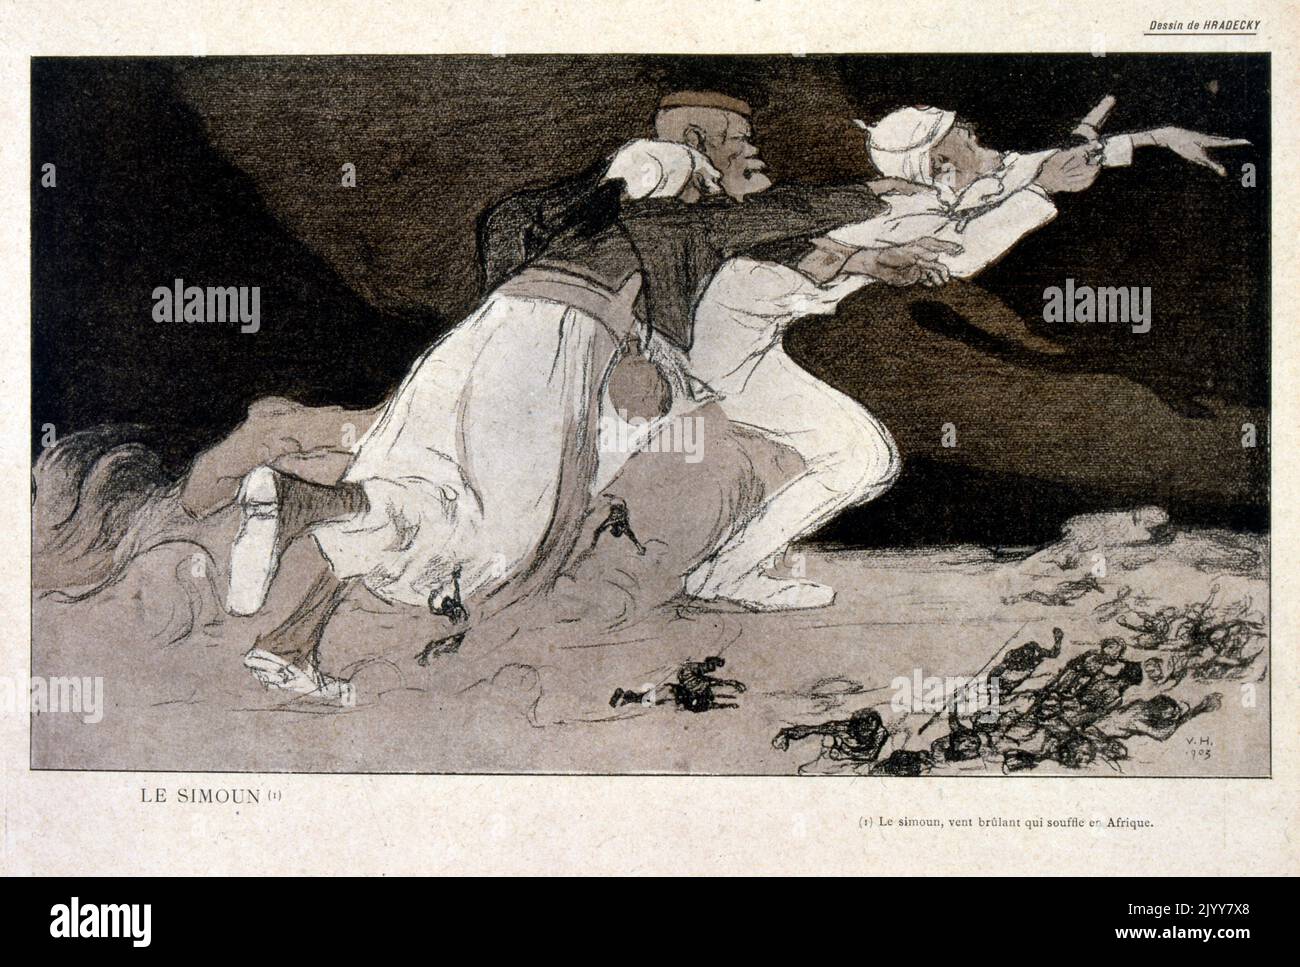 Illustrazione satirica raffigurante vecchi uomini appesi l'uno all'altro uranti 'le Simoom' ( un vento caldo che soffia dall'Africa). Foto Stock